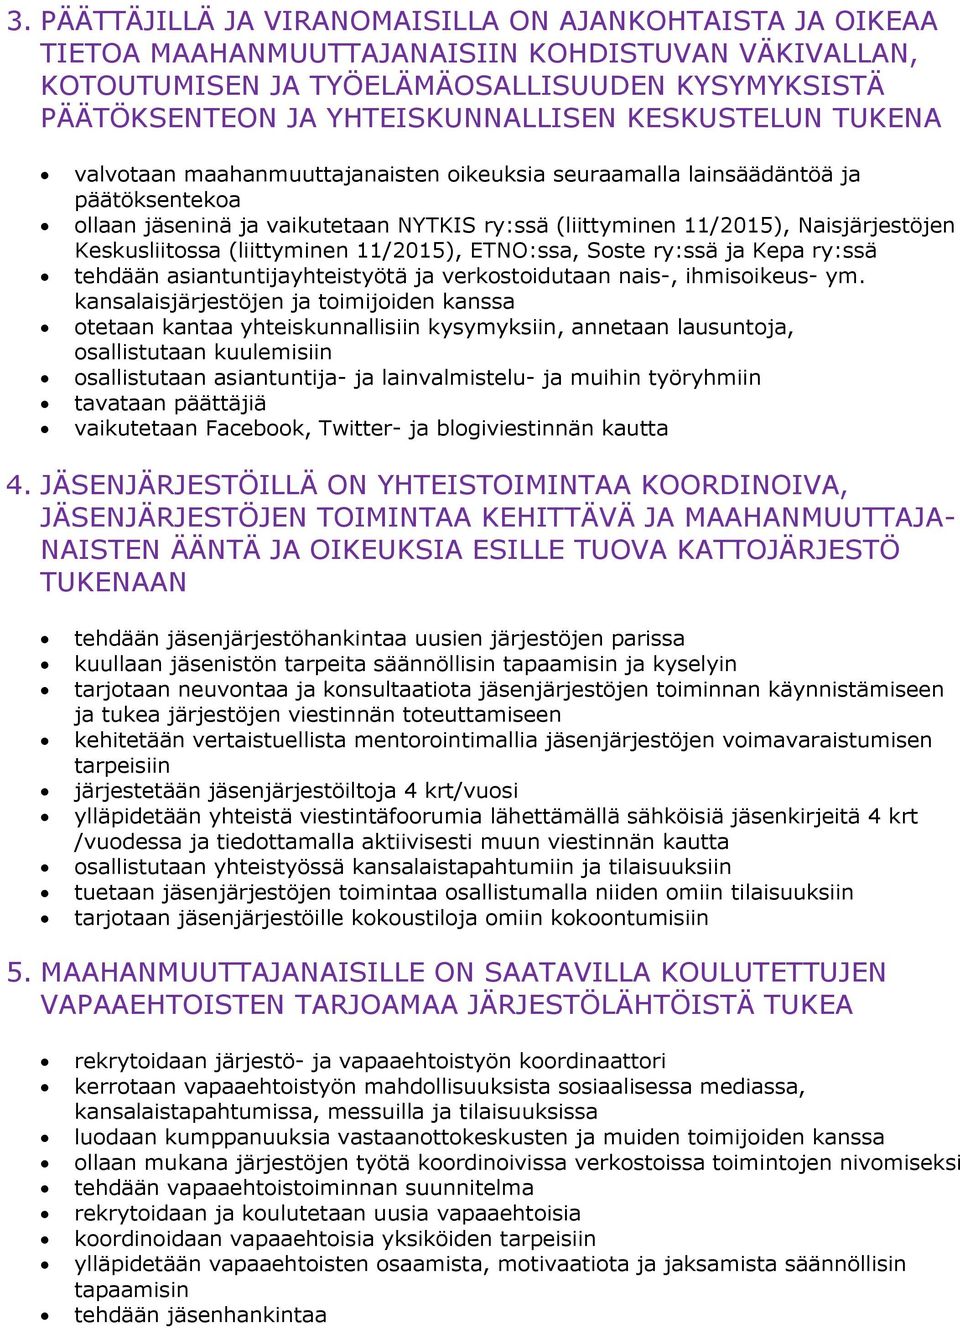 Keskusliitossa (liittyminen 11/2015), ETNO:ssa, Soste ry:ssä ja Kepa ry:ssä tehdään asiantuntijayhteistyötä ja verkostoidutaan nais-, ihmisoikeus- ym.